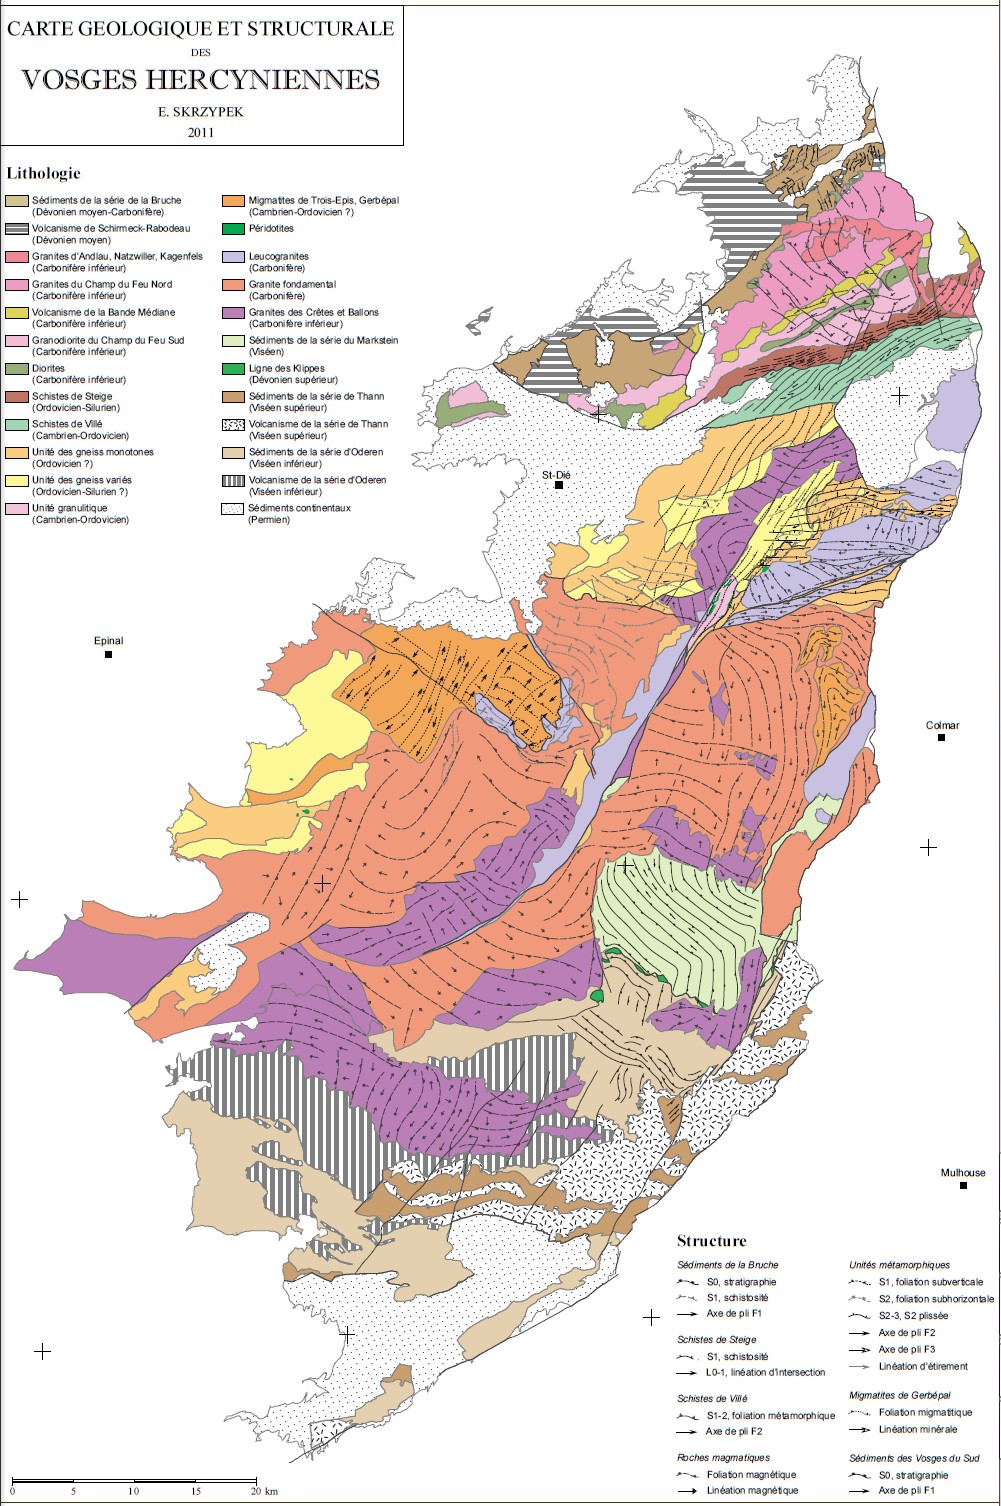 Carte géologique et structurale des vosges hercyniennes